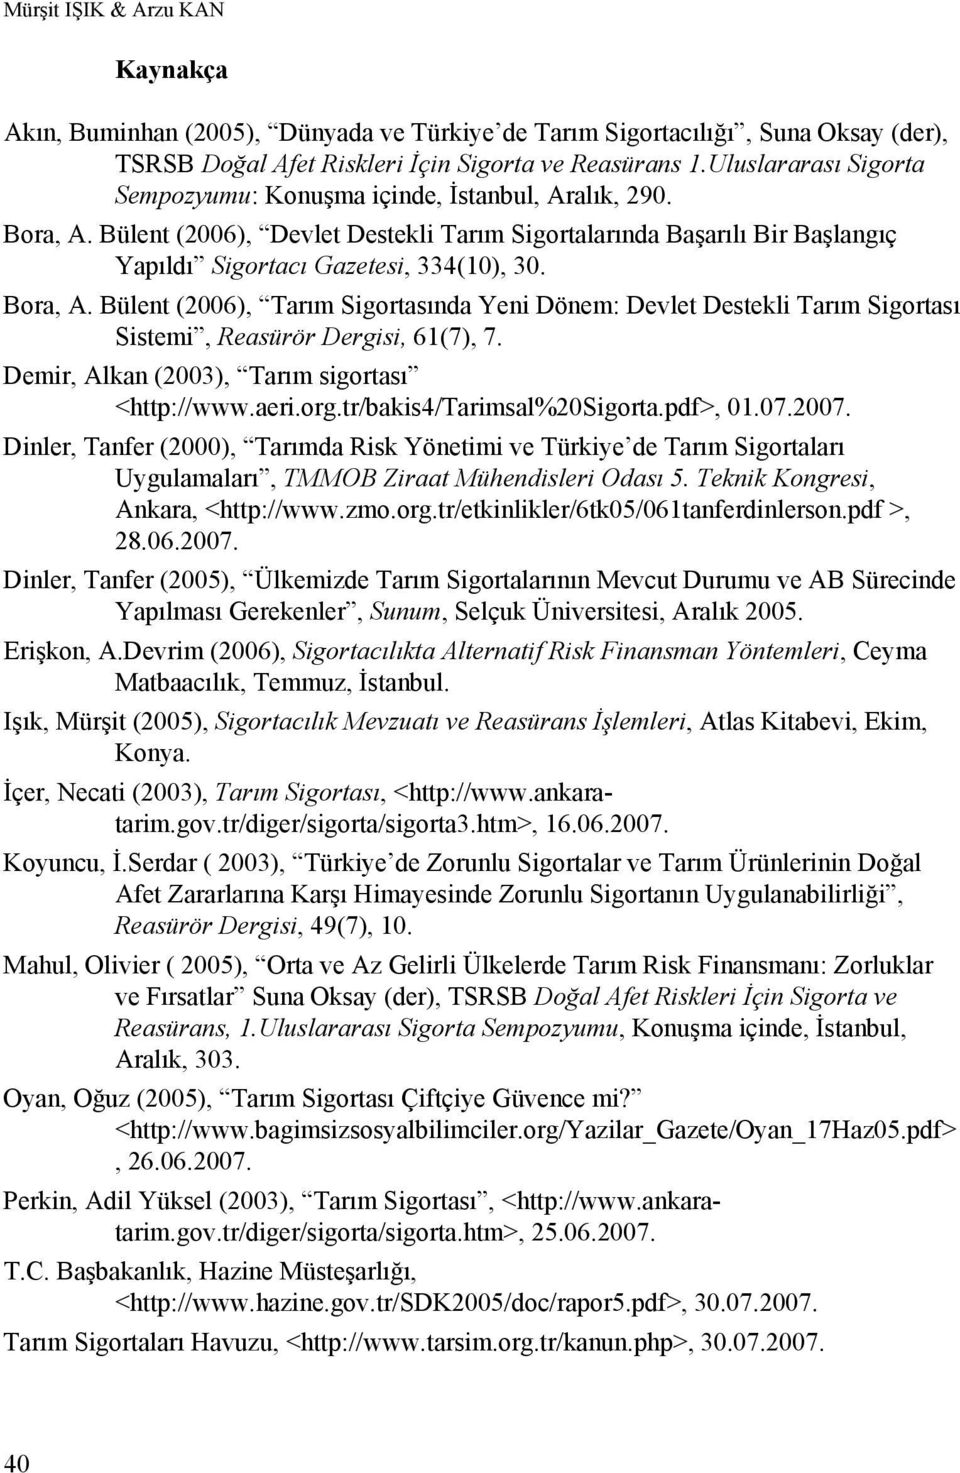 Bora, A. Bülent (2006), Tarım Sigortasında Yeni Dönem: Devlet Destekli Tarım Sigortası Sistemi, Reasürör Dergisi, 61(7), 7. Demir, Alkan (2003), Tarım sigortası <http://www.aeri.org.